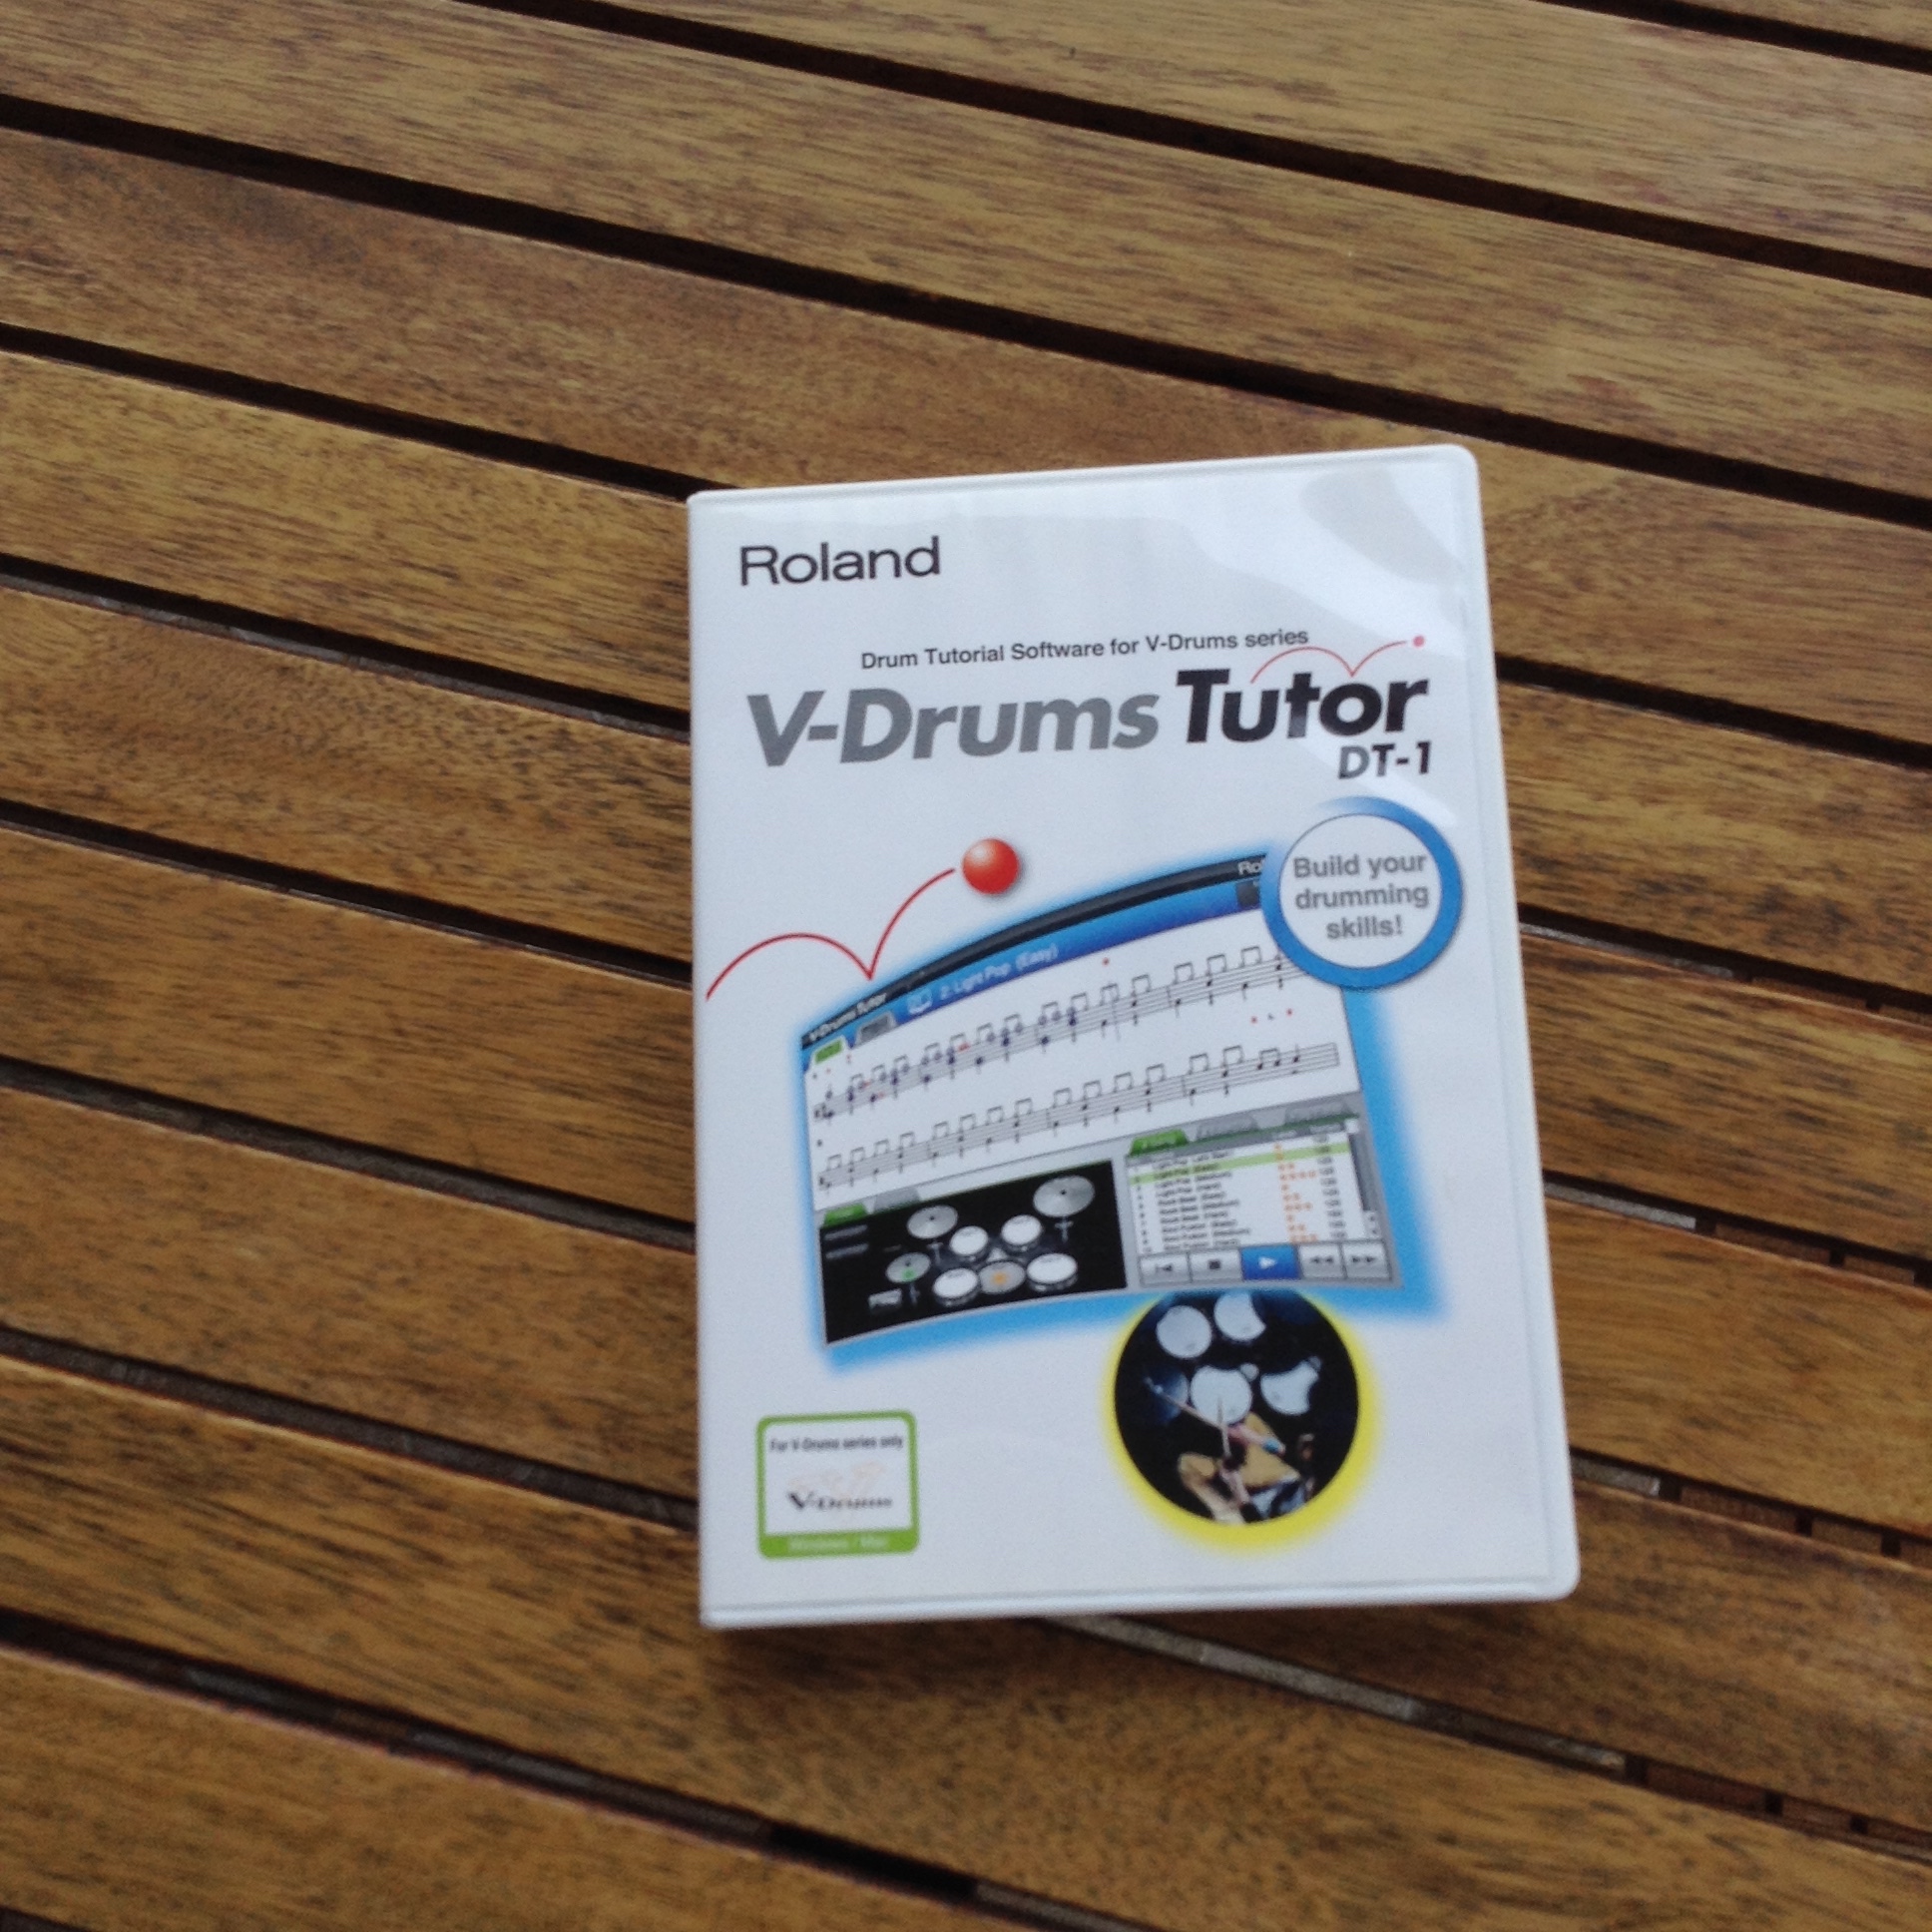 roland dt-1 v-drums tutor connect